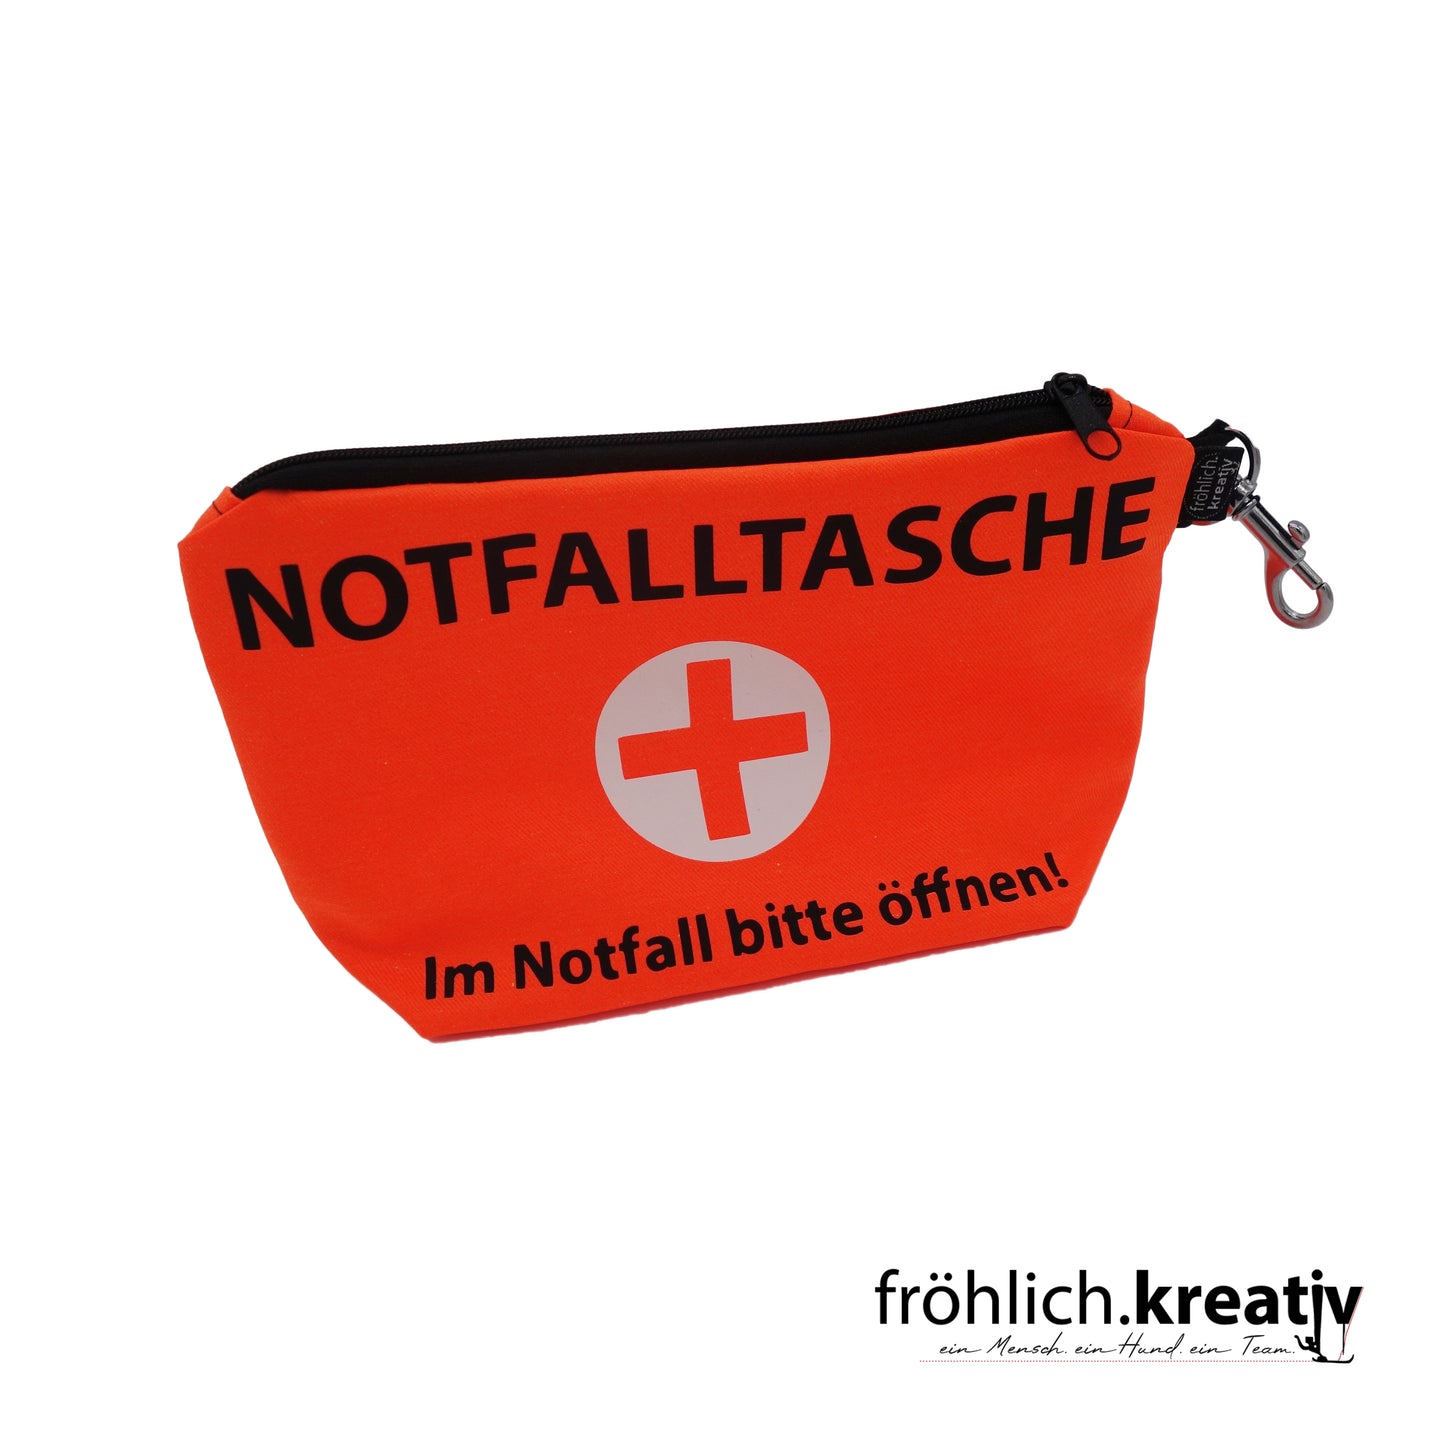 Notfalltasche (medium)